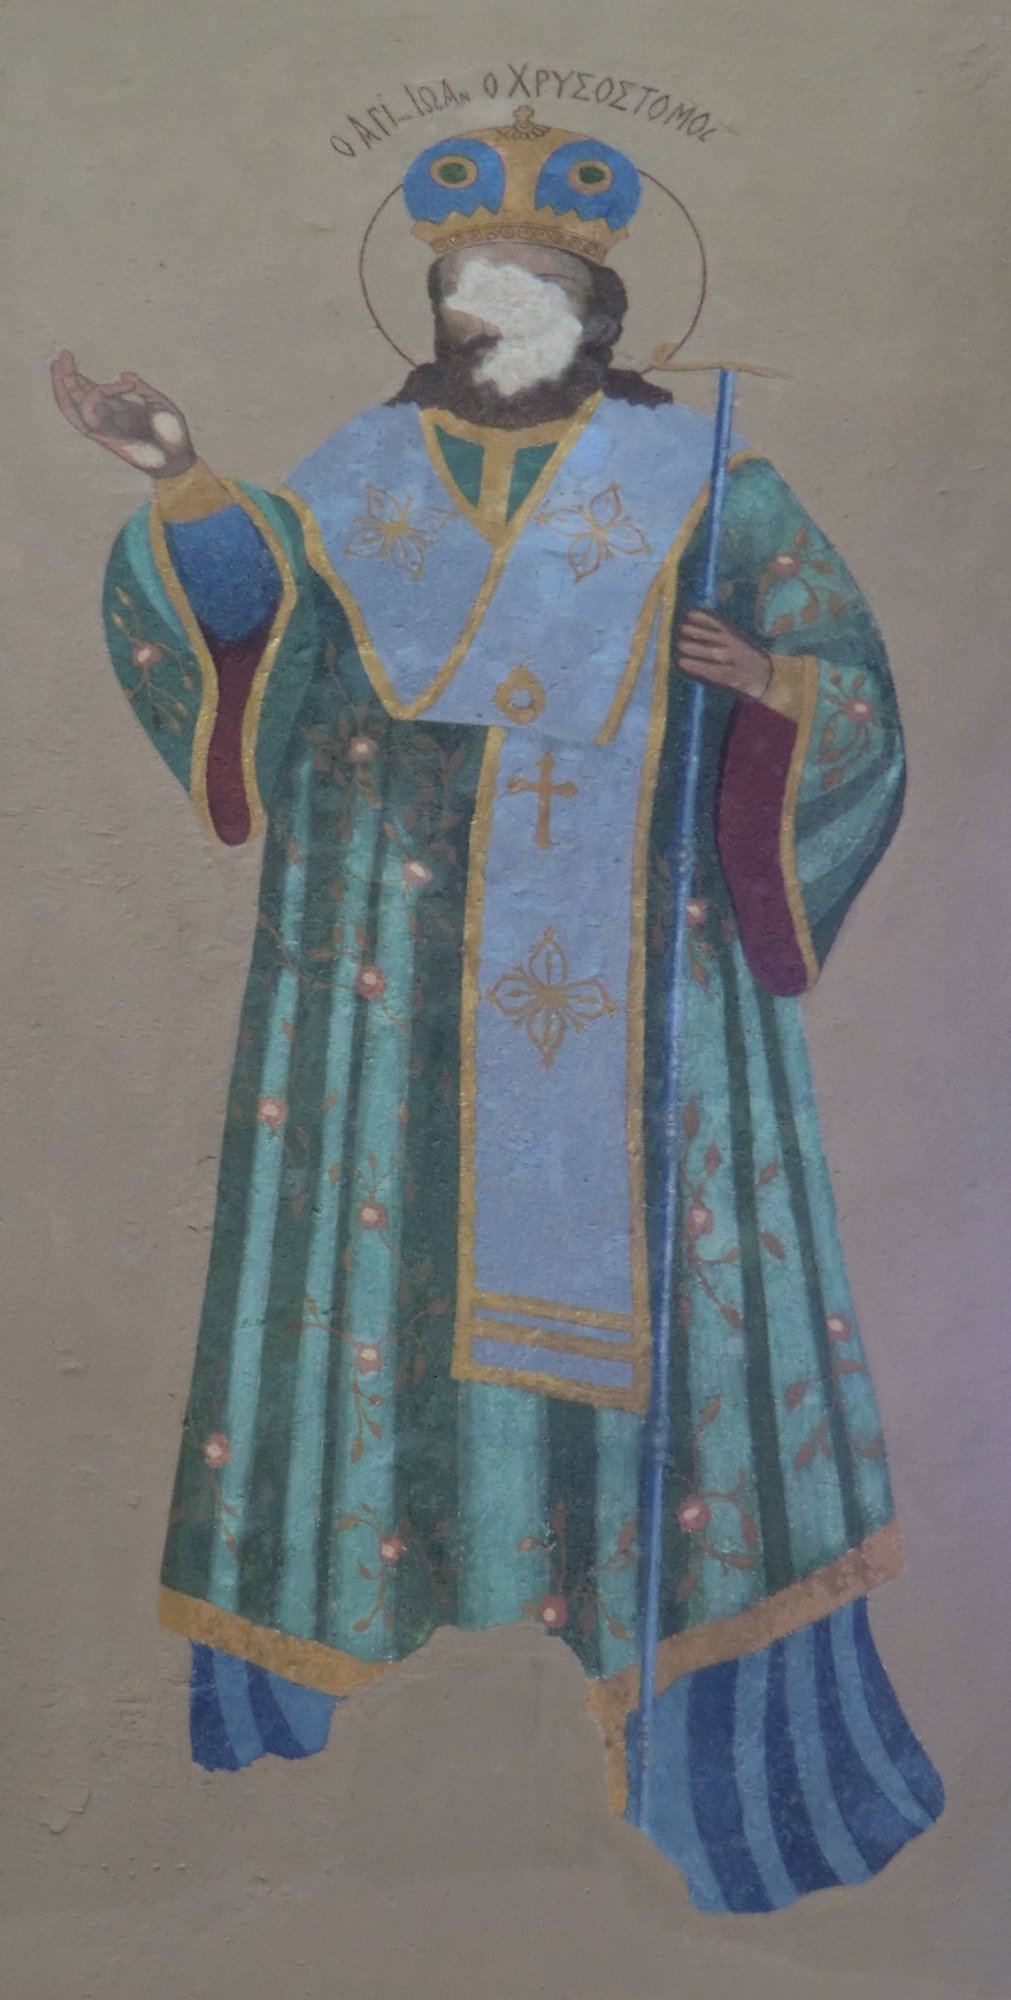 Wandmalerei in der rum-orthodoxen Kirche von Smyrna, heute Museum. Das Gesicht wurde - wegen des Bilderverbots - von strengen Muslimen zerstört.